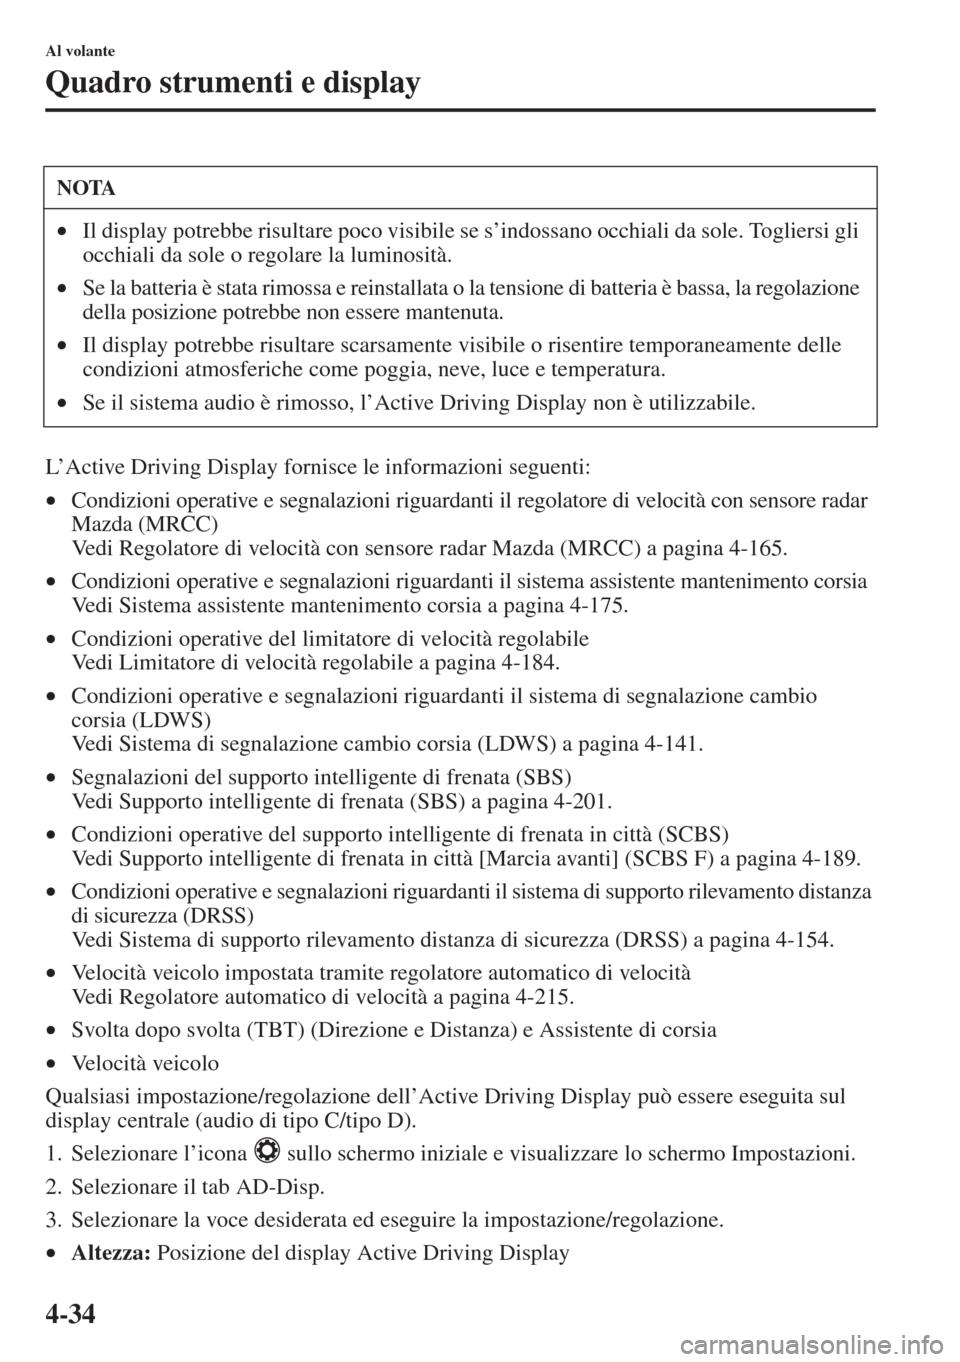 MAZDA MODEL 6 2015  Manuale del proprietario (in Italian)  4-34
Al volante
Quadro strumenti e display
L’Active Driving Display fornisce le informazioni seguenti:
•Condizioni operative e segnalazioni riguardanti il regolatore di velocità con sensore radar